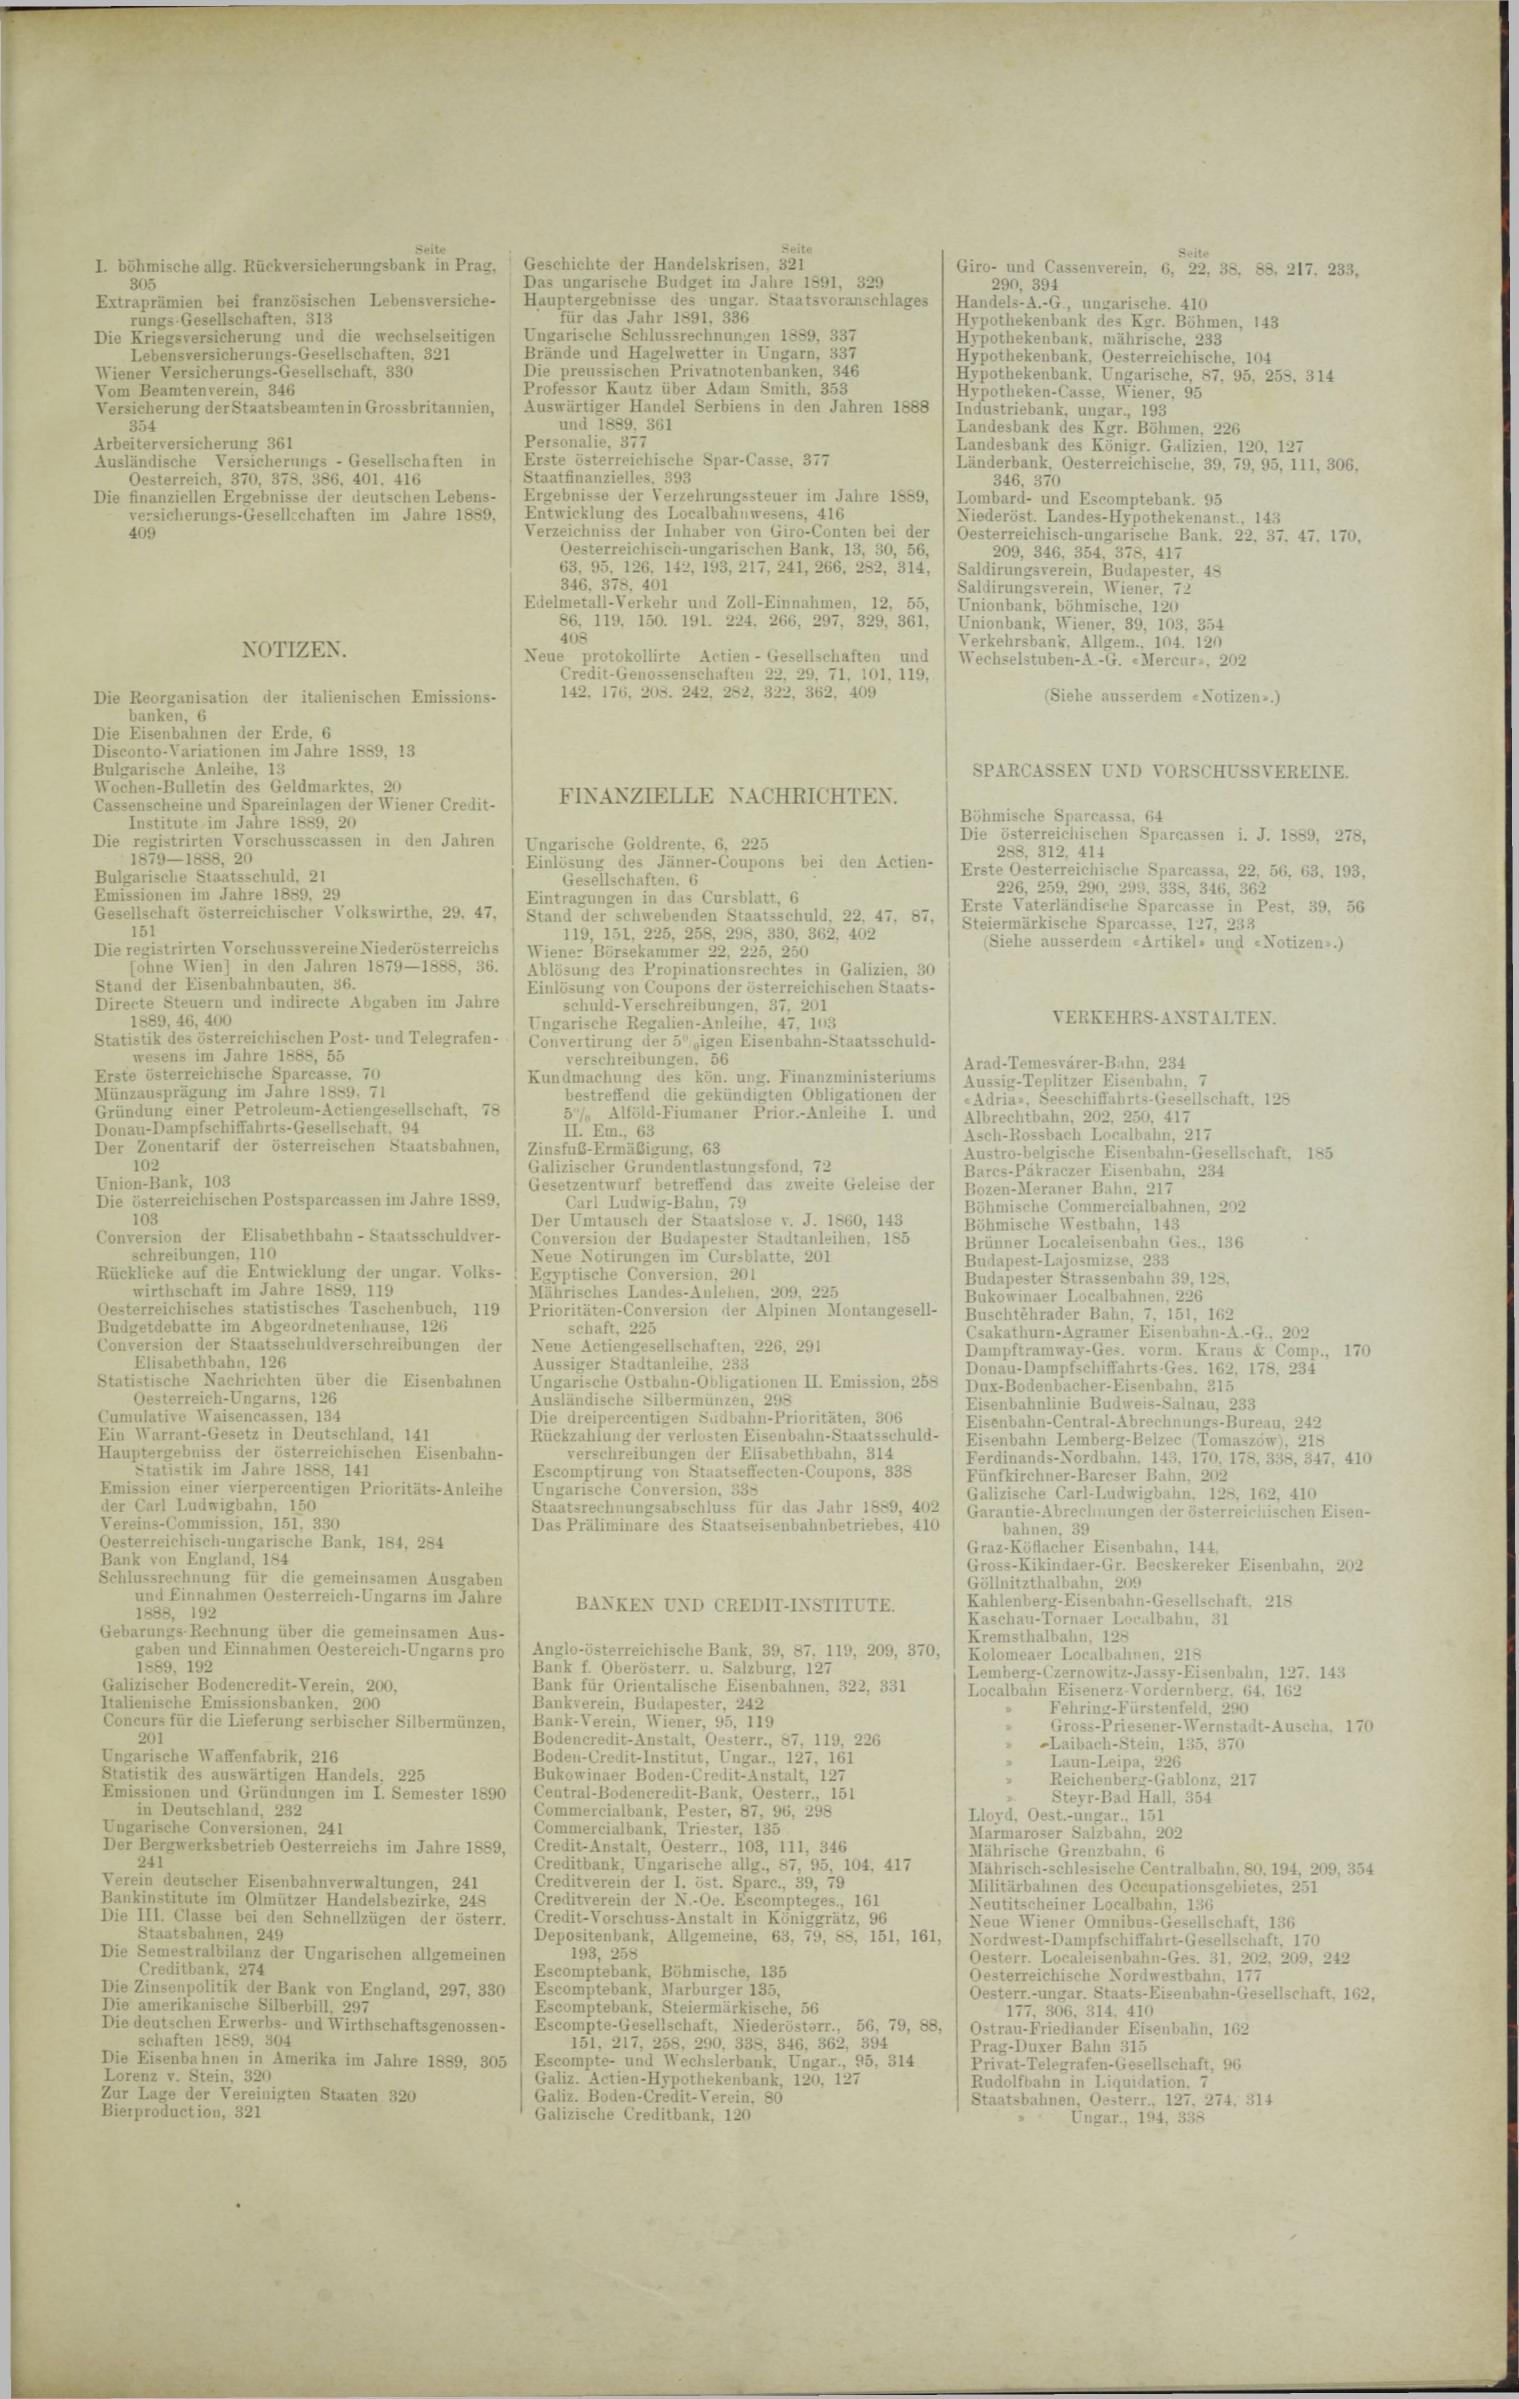 Der Tresor 02.01.1890 - Seite 11